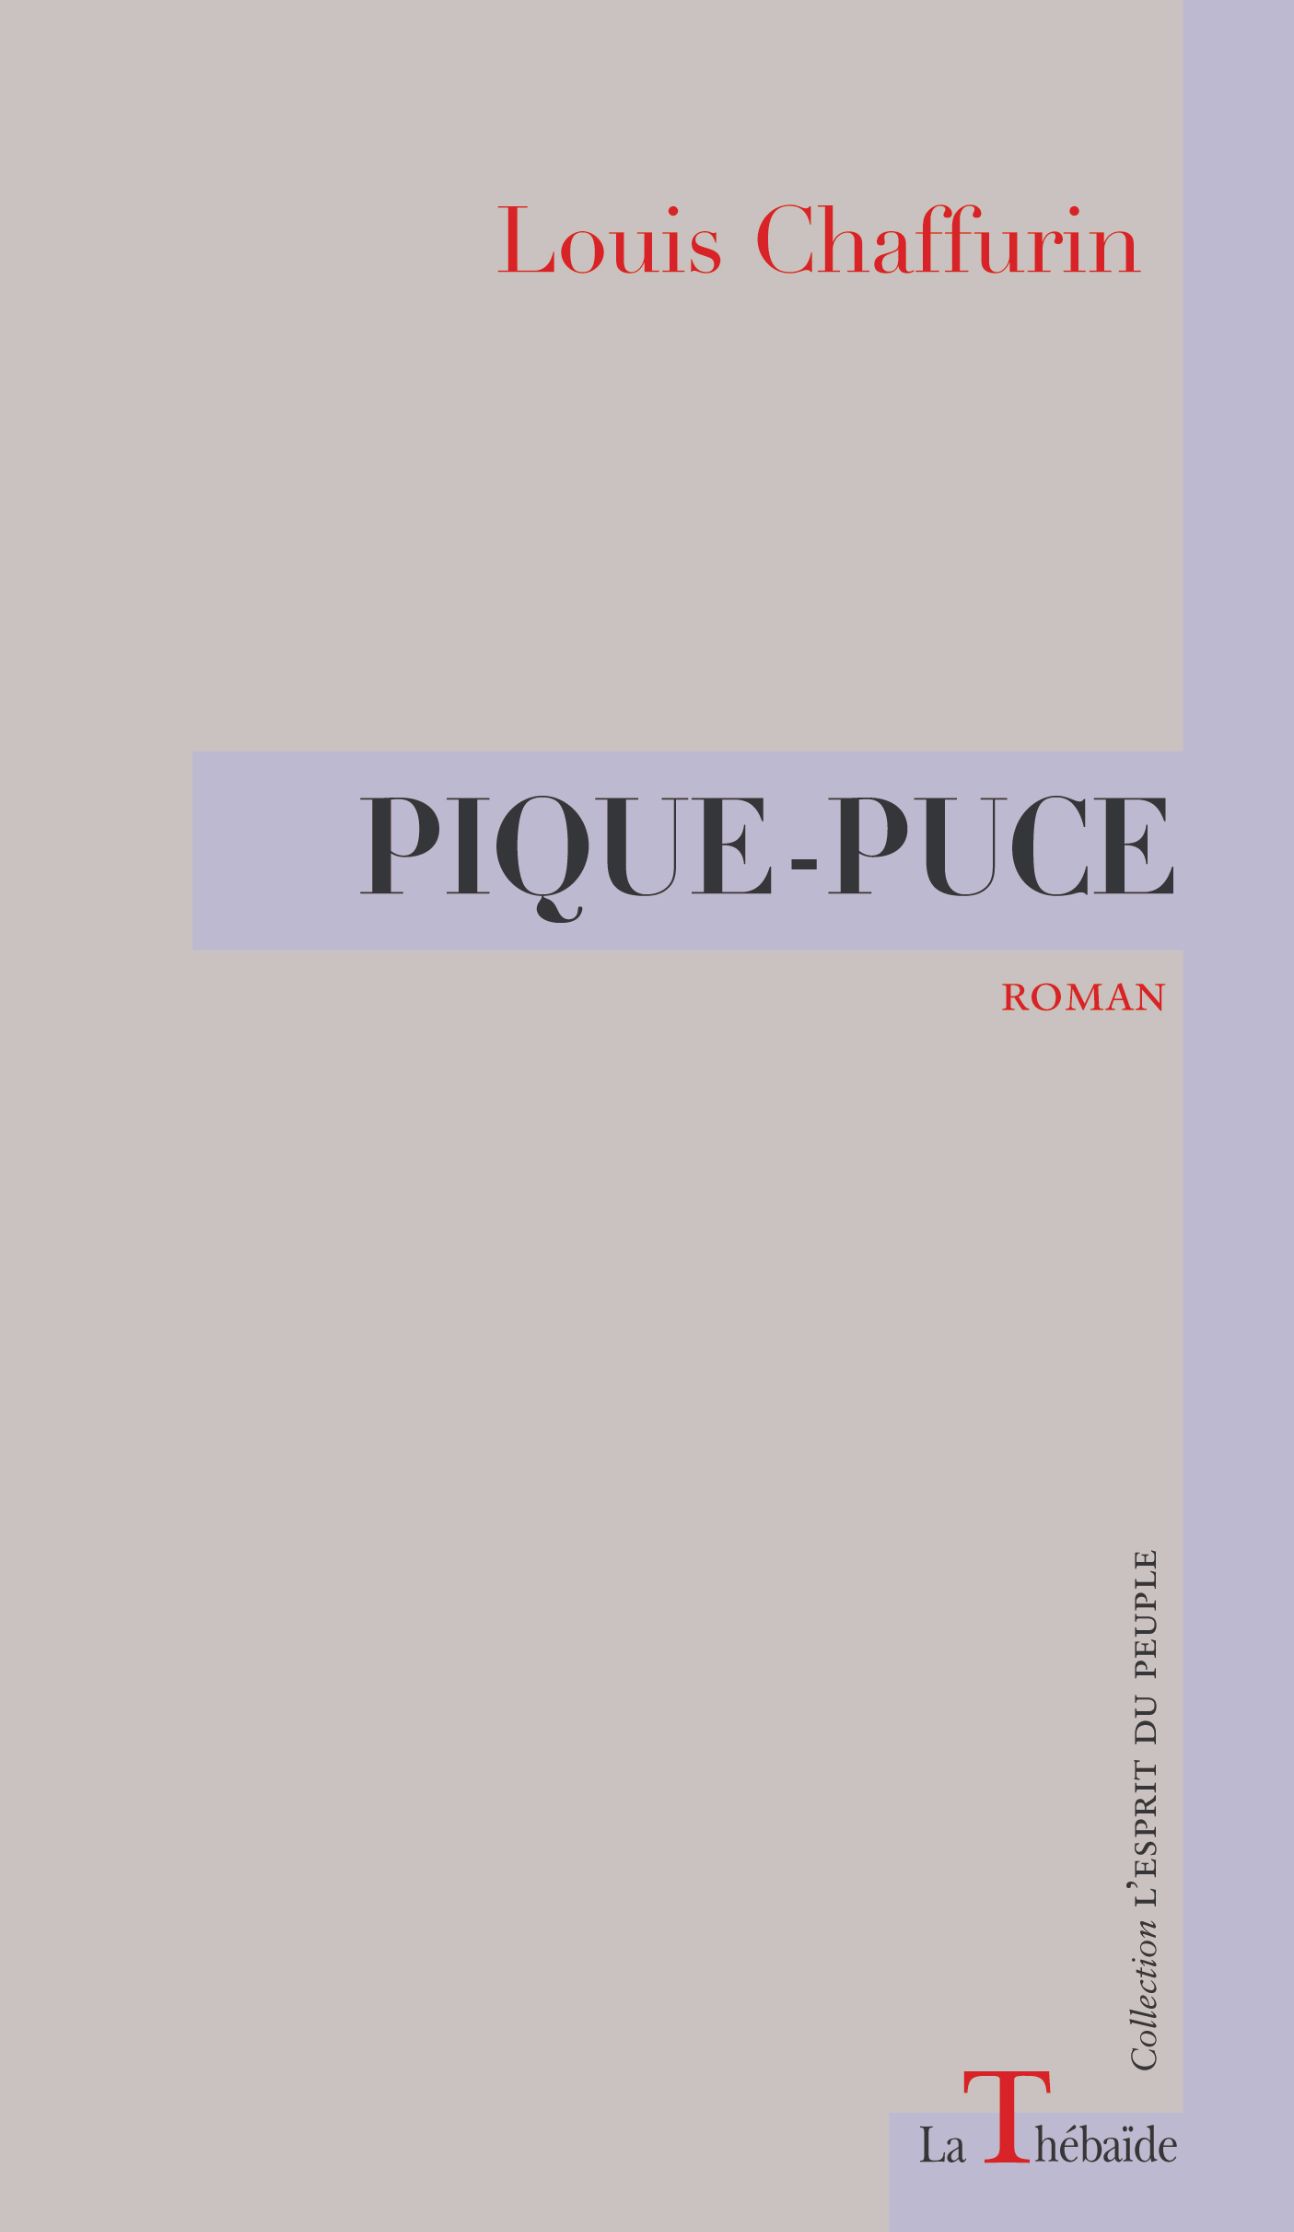 Louis Chaffurin, Pique-puce (1928)